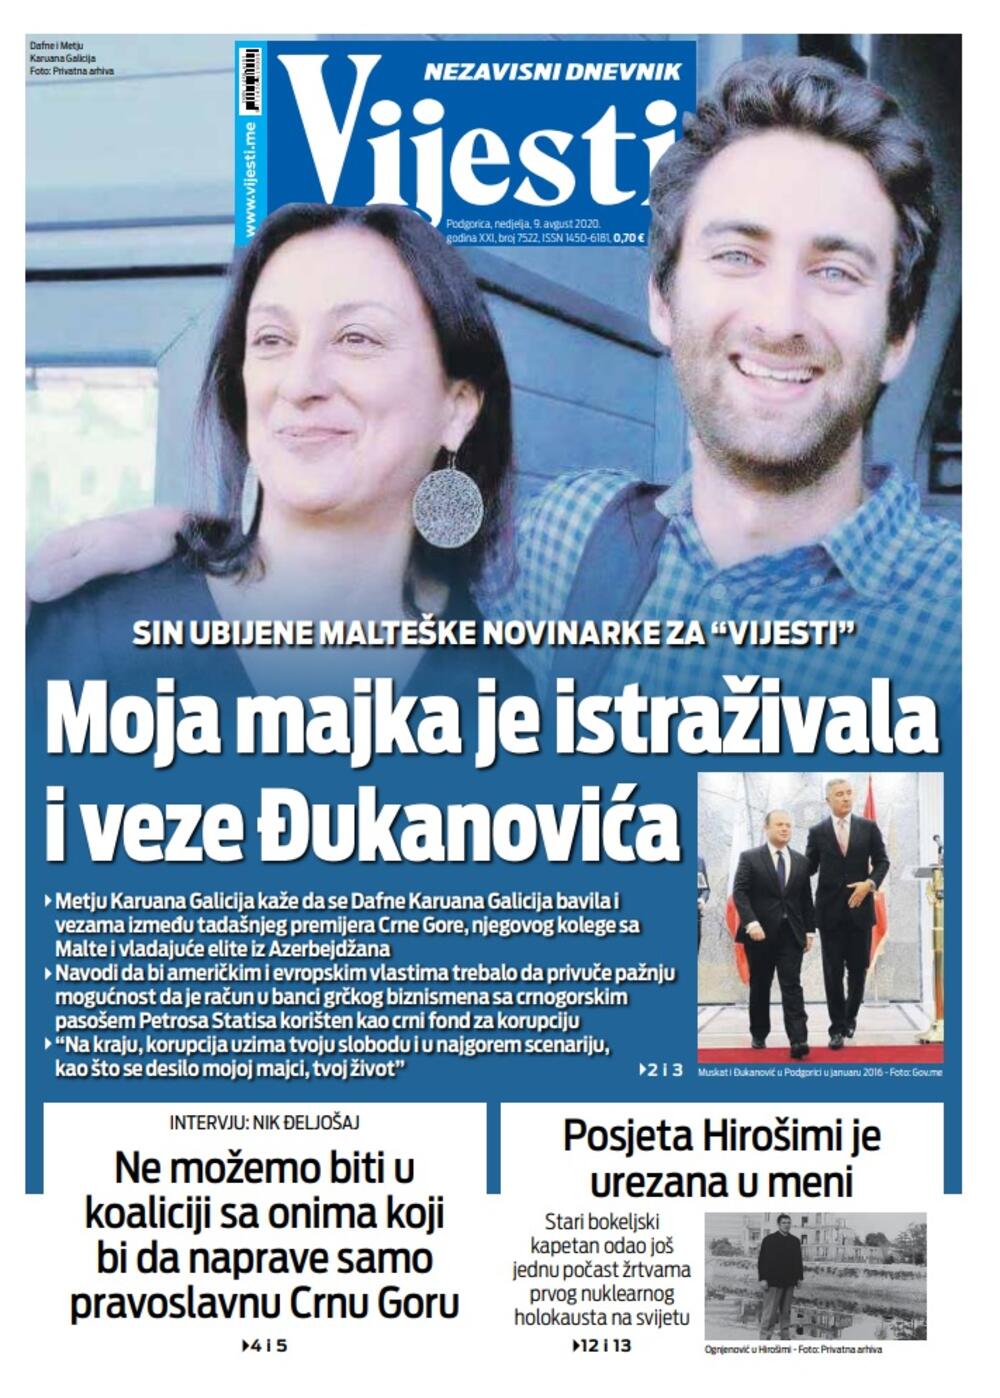 Naslovna strana "Vijesti" za 9. avgust, Foto: Vijesti